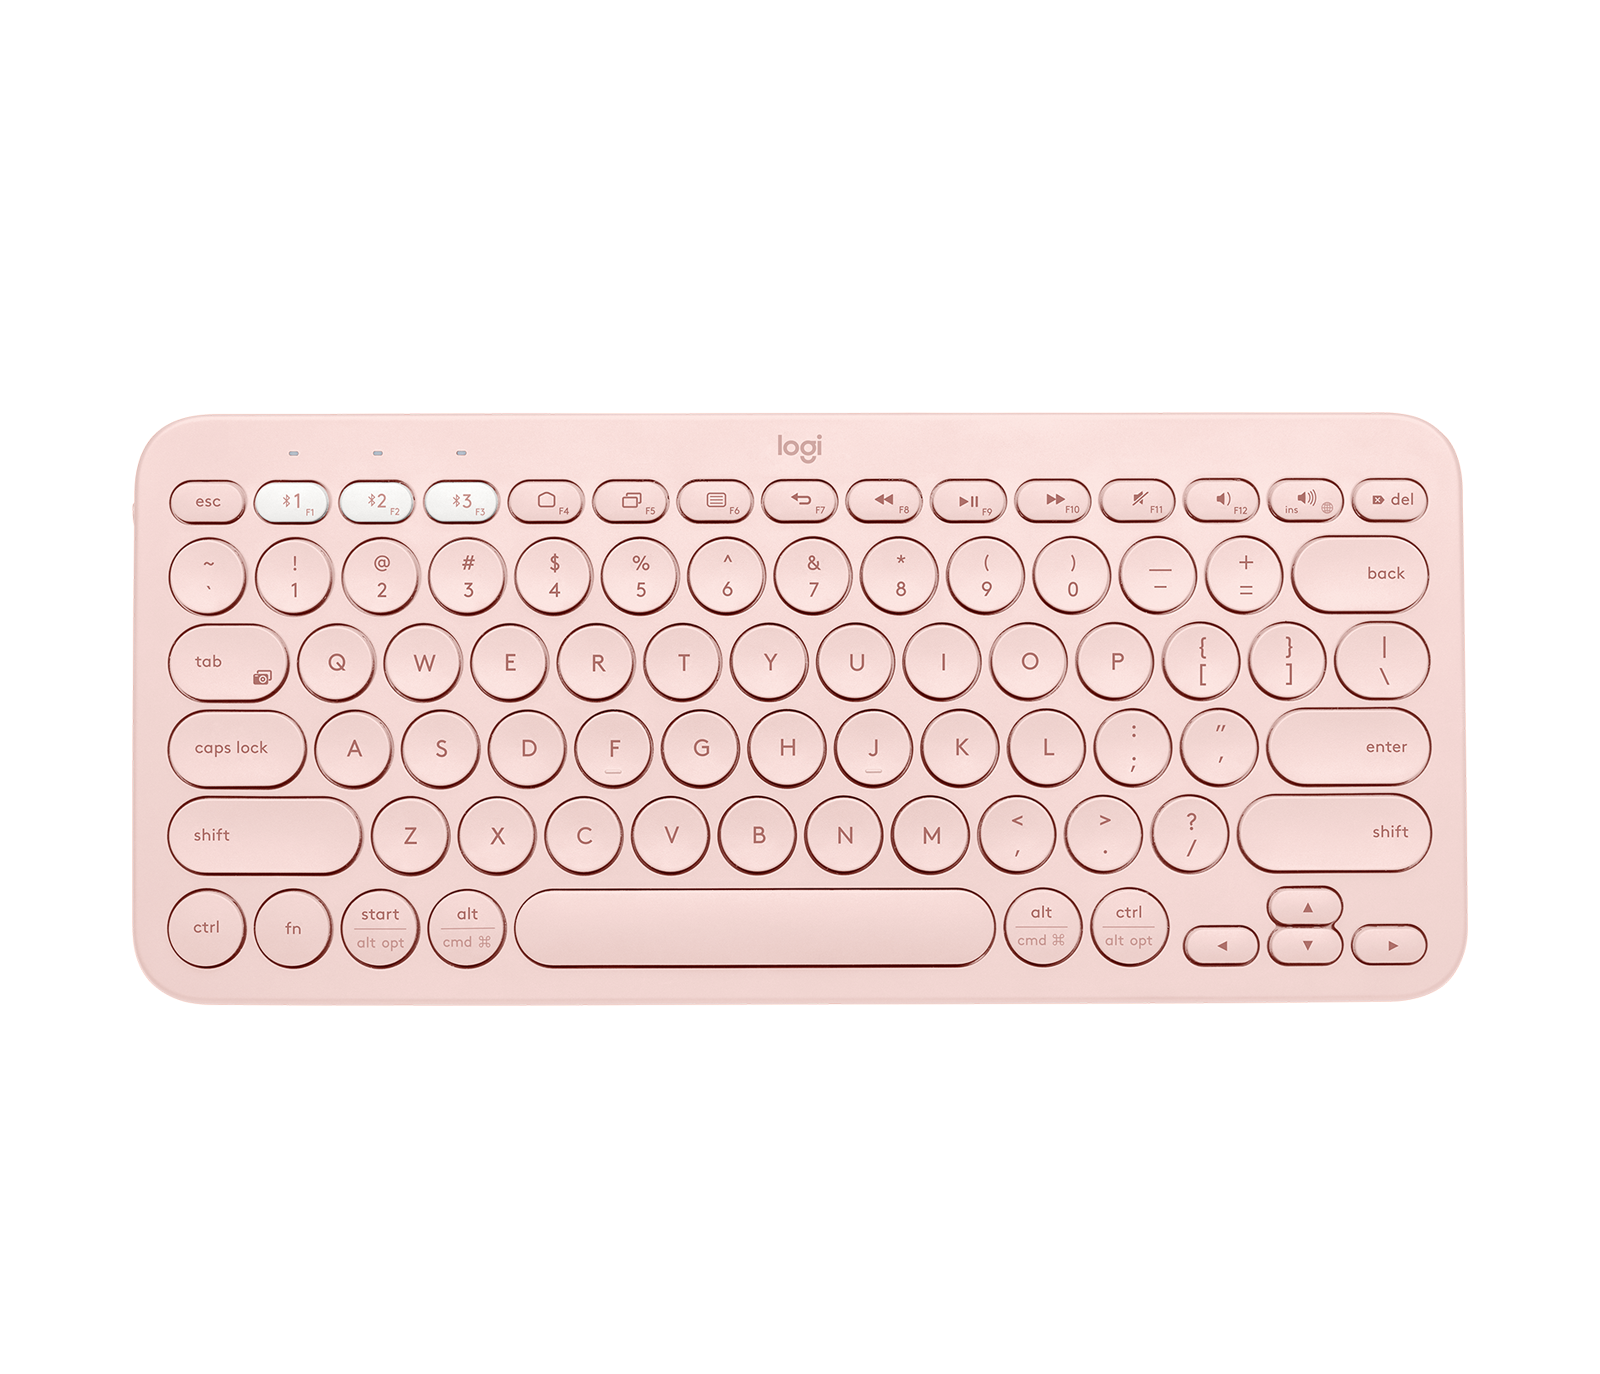 bijgeloof Discrepantie hoesten Logitech K380 Multi-Device Bluetooth Keyboard - White, Black, Pink, Blue